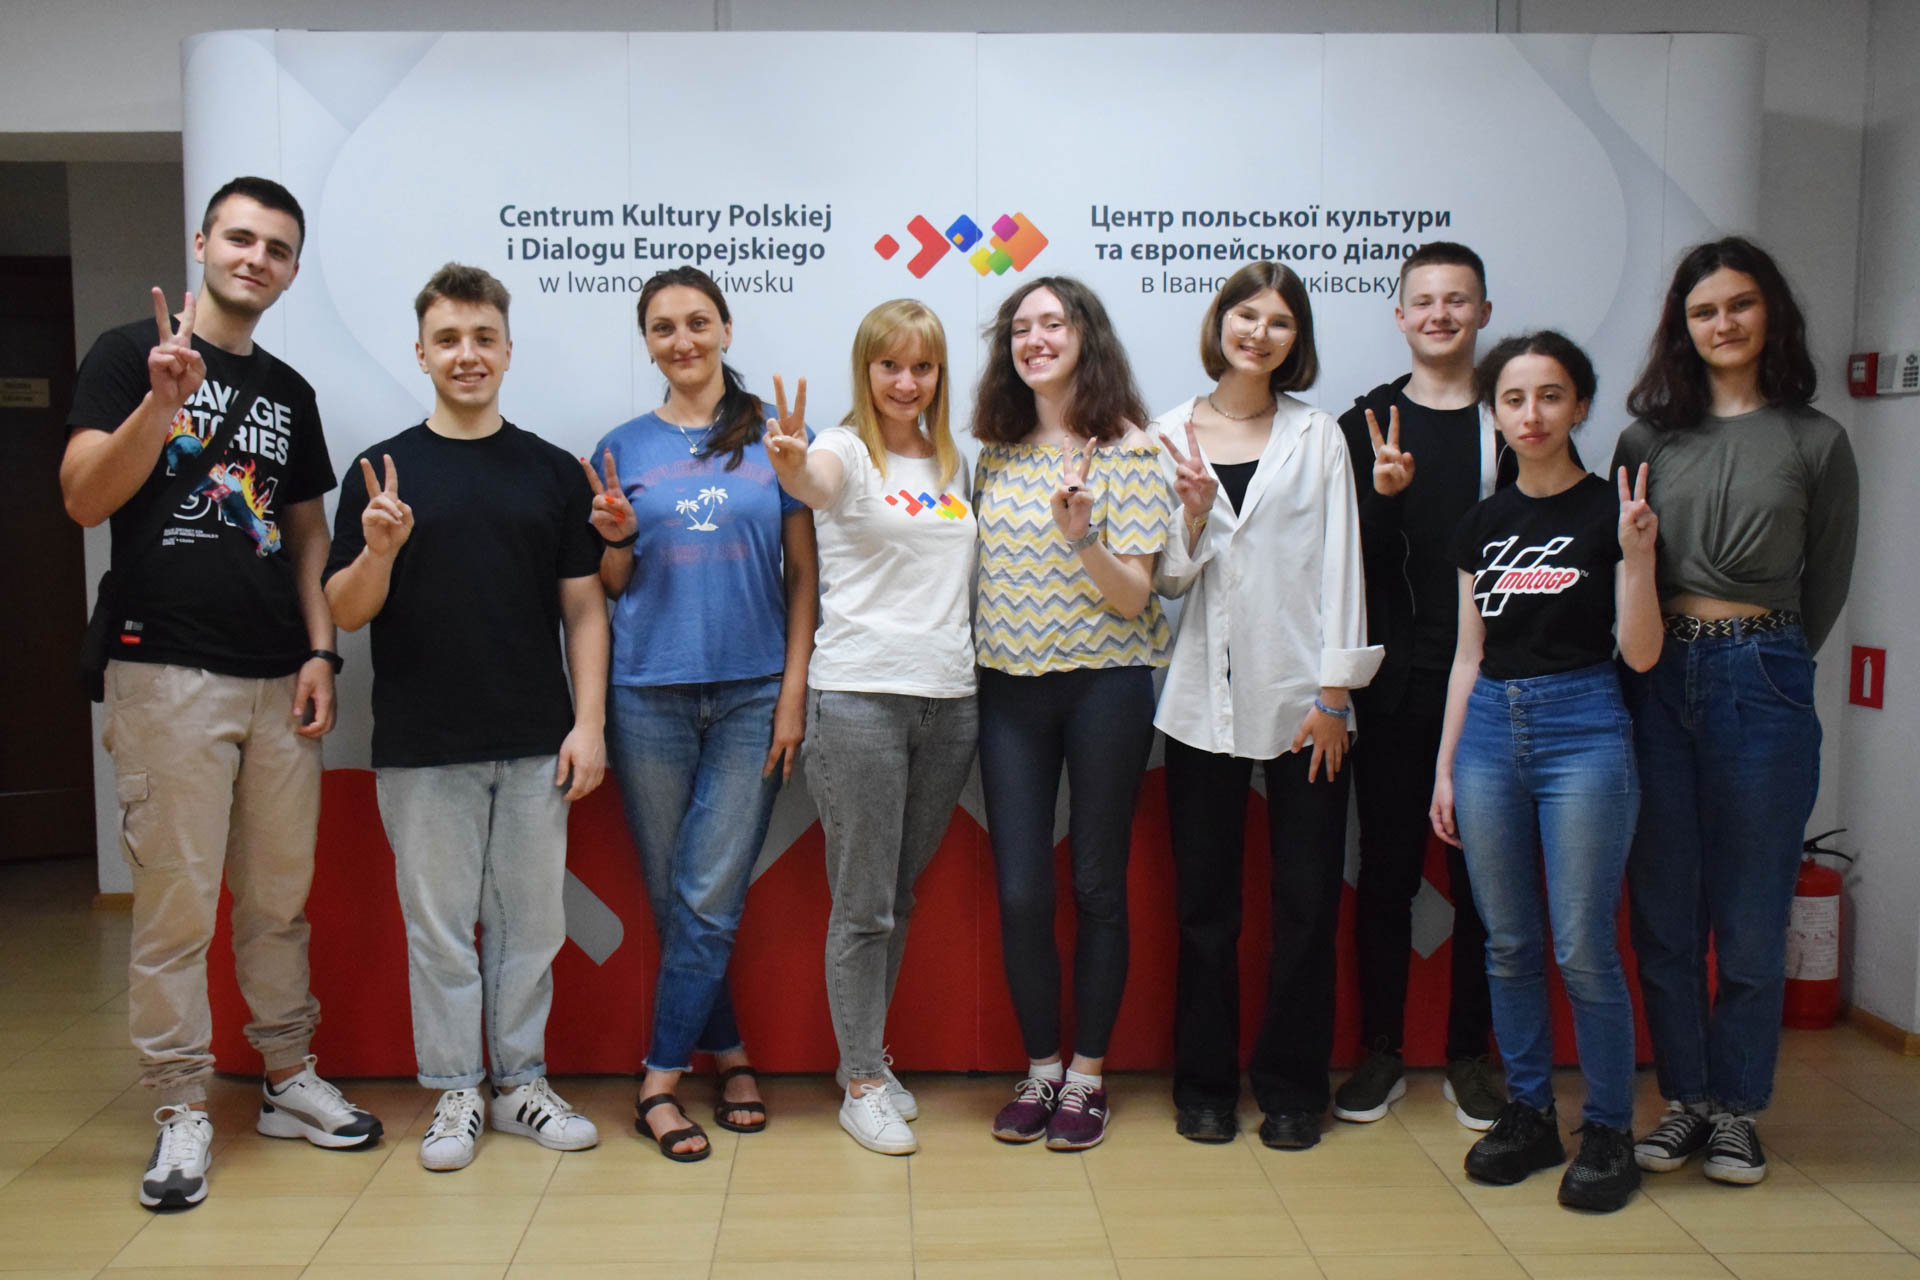 Зустріч волонтерів Центру польської культури та європейського діалогу